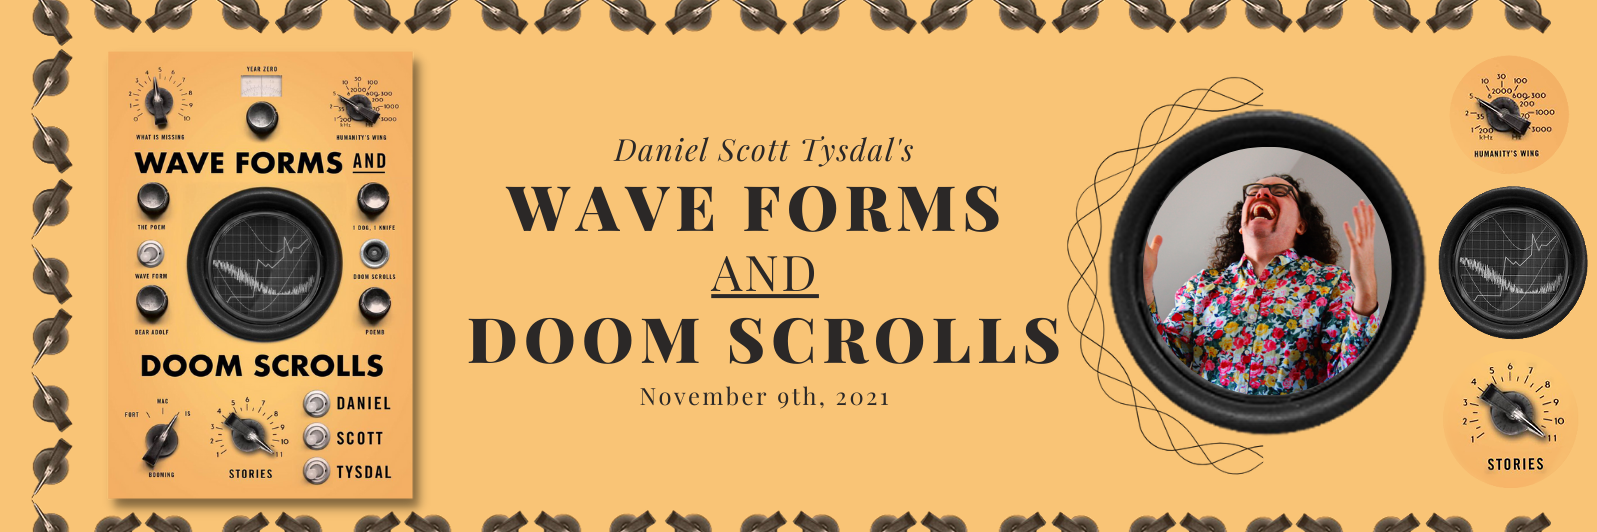 Daniel Scott Tysdal's New Book Release 